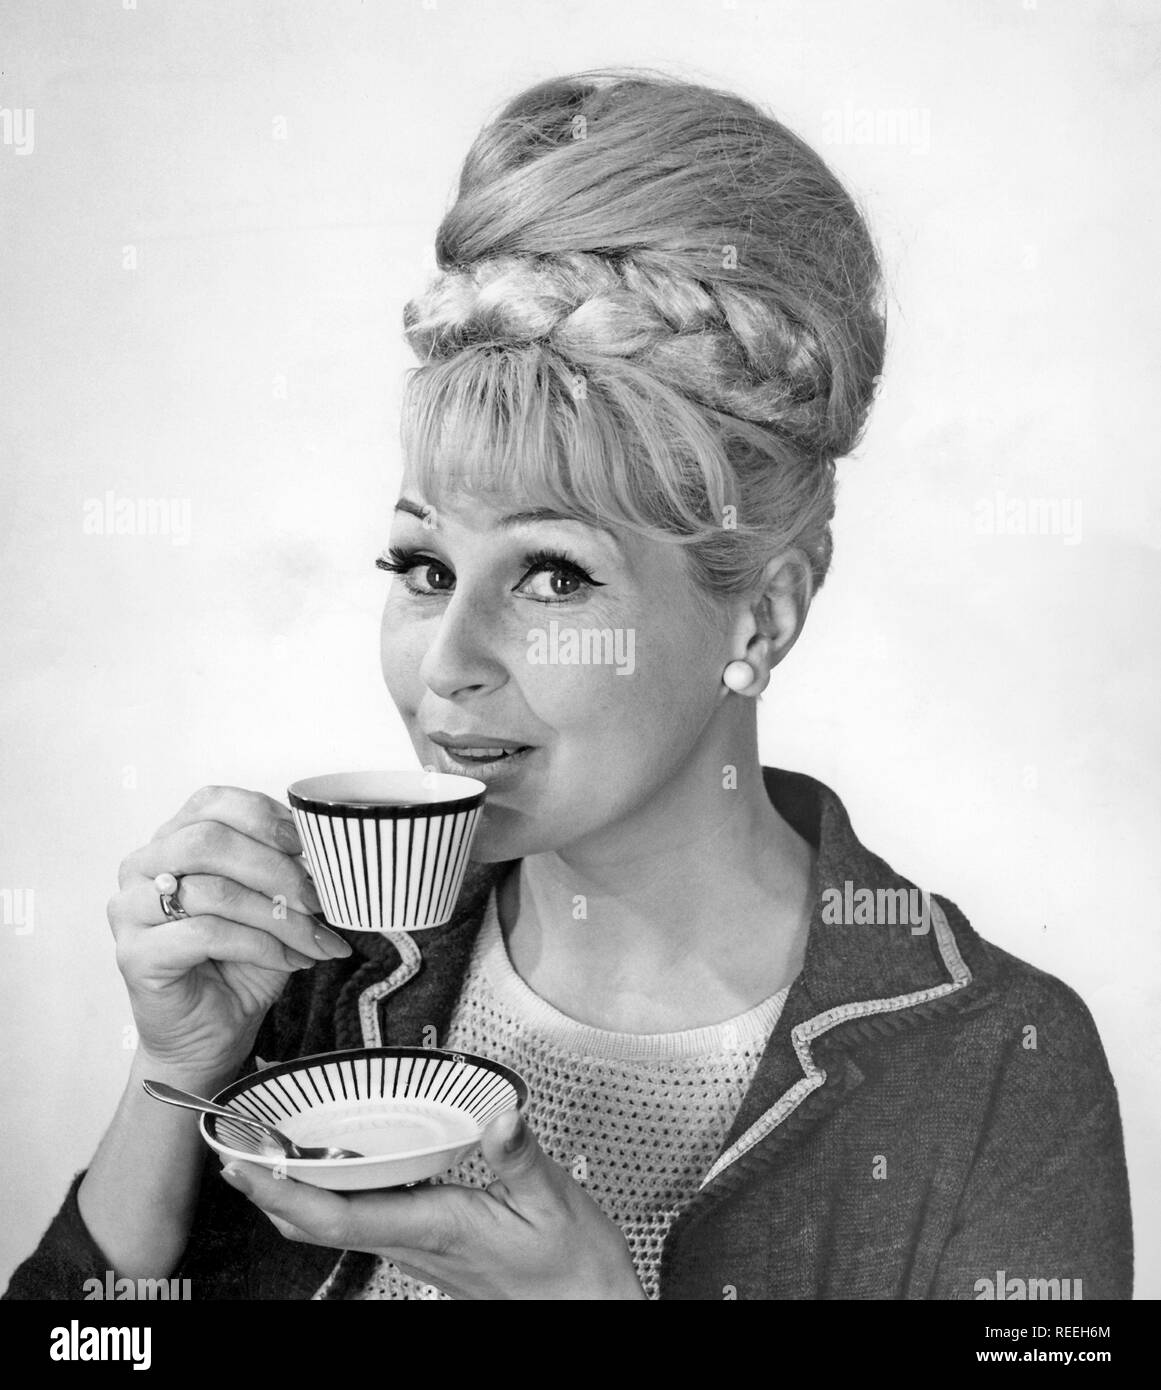 Kaffee in den 1960er Jahren. Eine Frau trinkt Kaffee aus einer Kaffeetasse mit einem 1960er Streifenmuster. Sie hat ihr Haar in den typischen Bienenstock Frisur, in denen lange Haare auf dem Kopf aufgetürmt ist und eine gewisse Ähnlichkeit mit der Form eines traditionellen Bienenstock. Schweden 1962 Stockfoto